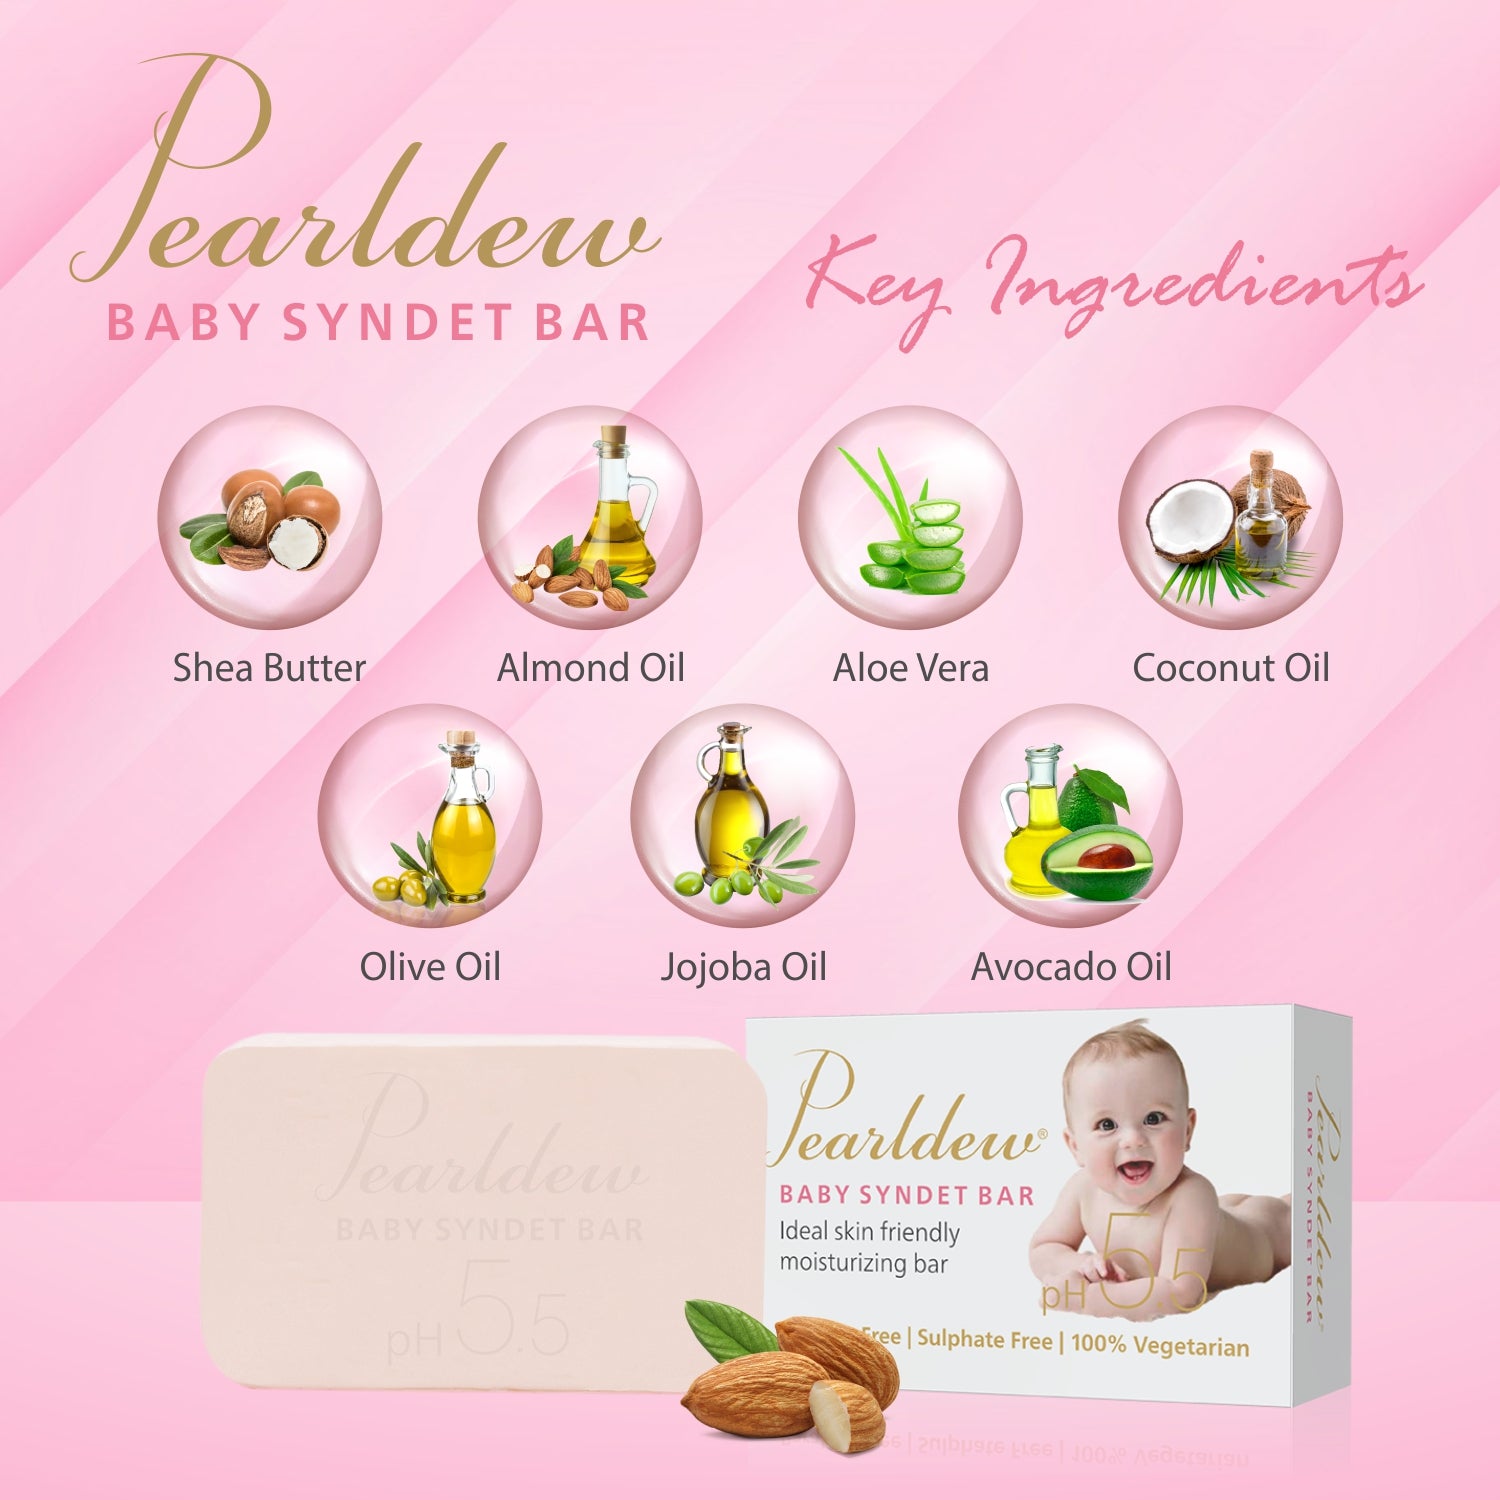 Pearldew Baby Syndet Bar (75 gm)